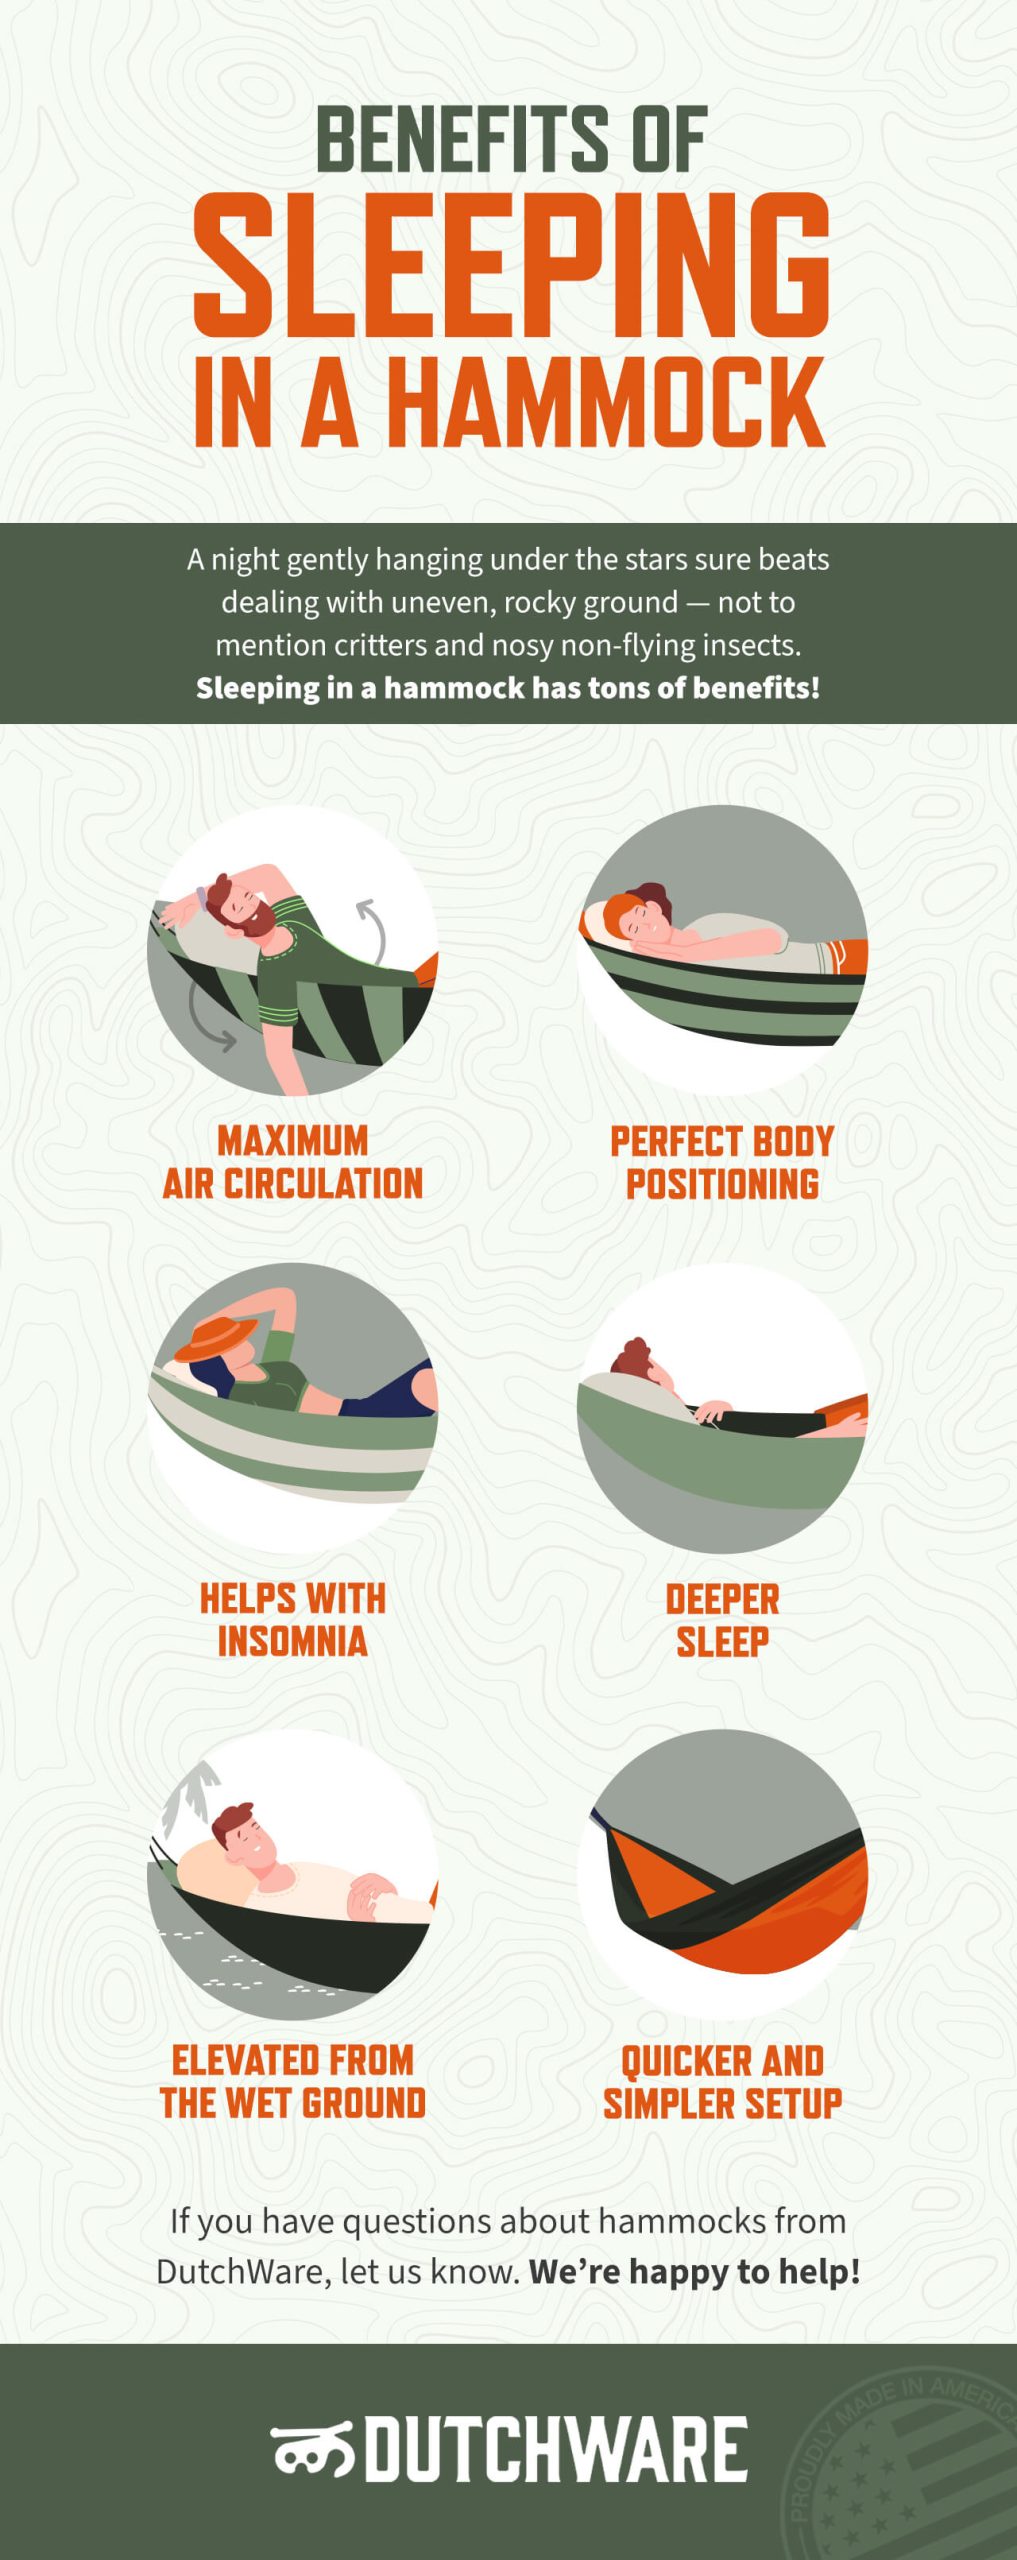 6 benefits of sleeping in a hammock